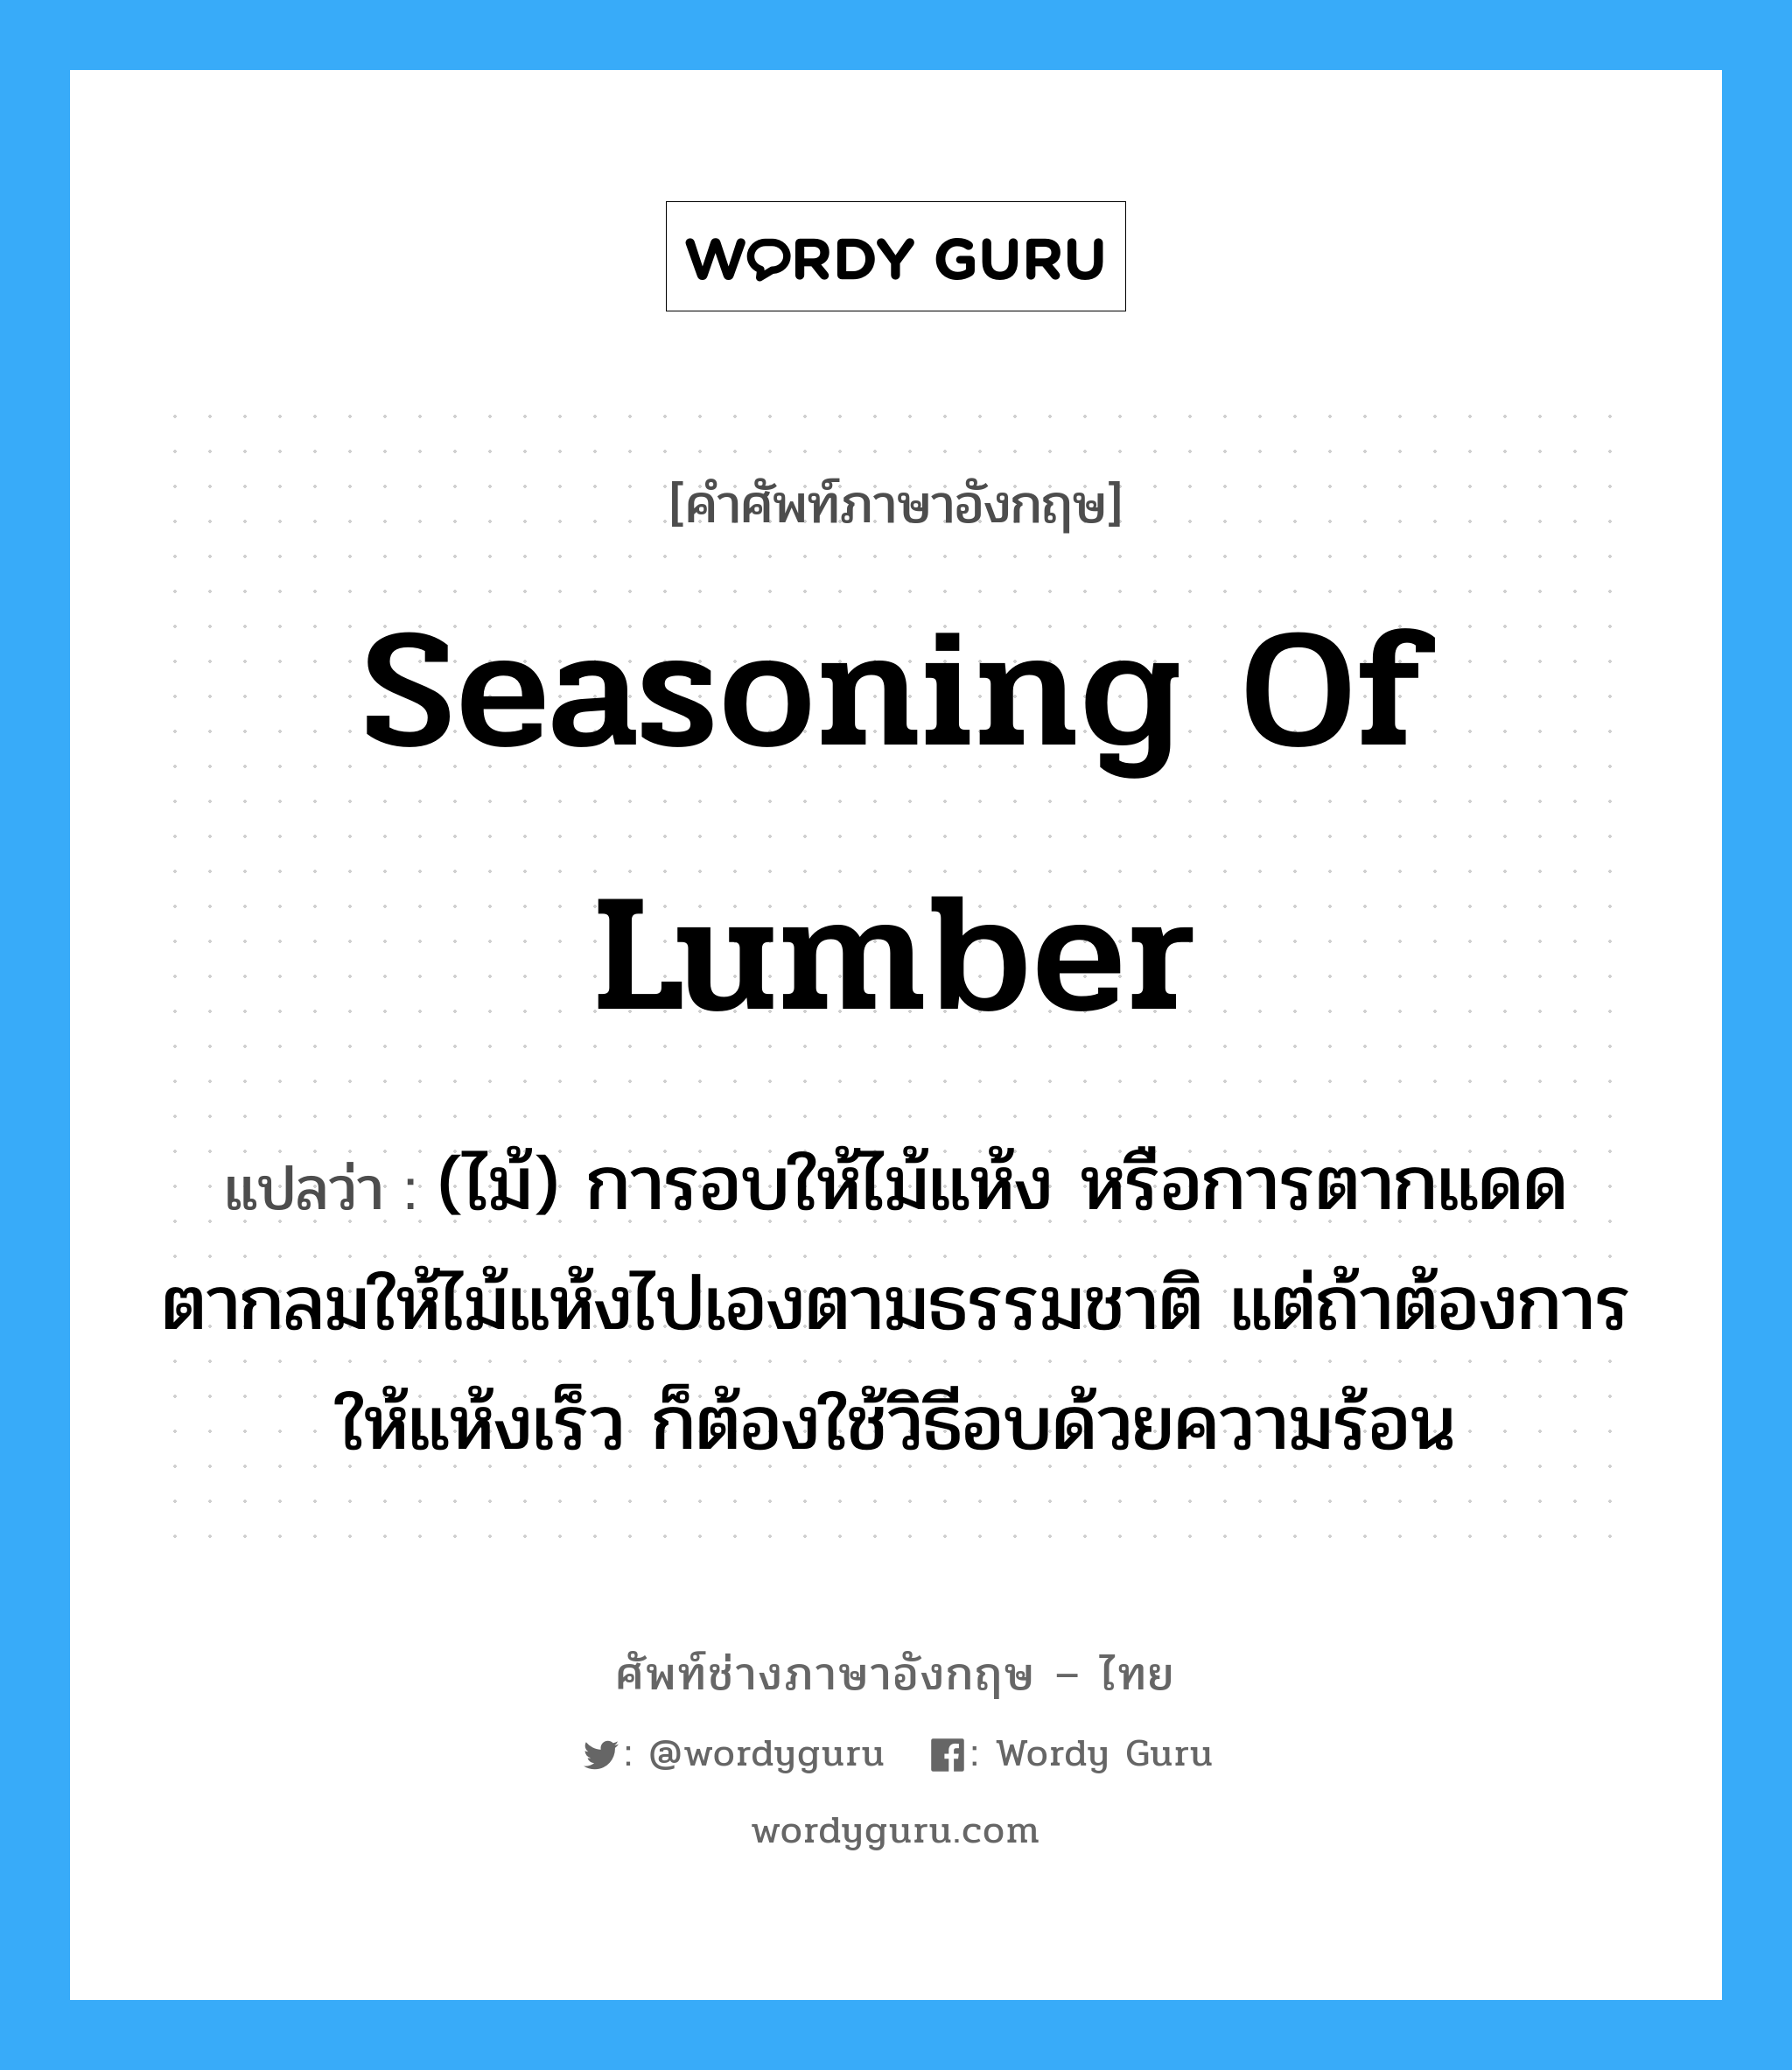 seasoning of lumber แปลว่า?, คำศัพท์ช่างภาษาอังกฤษ - ไทย seasoning of lumber คำศัพท์ภาษาอังกฤษ seasoning of lumber แปลว่า (ไม้) การอบให้ไม้แห้ง หรือการตากแดดตากลมให้ไม้แห้งไปเองตามธรรมชาติ แต่ถ้าต้องการให้แห้งเร็ว ก็ต้องใช้วิธีอบด้วยความร้อน